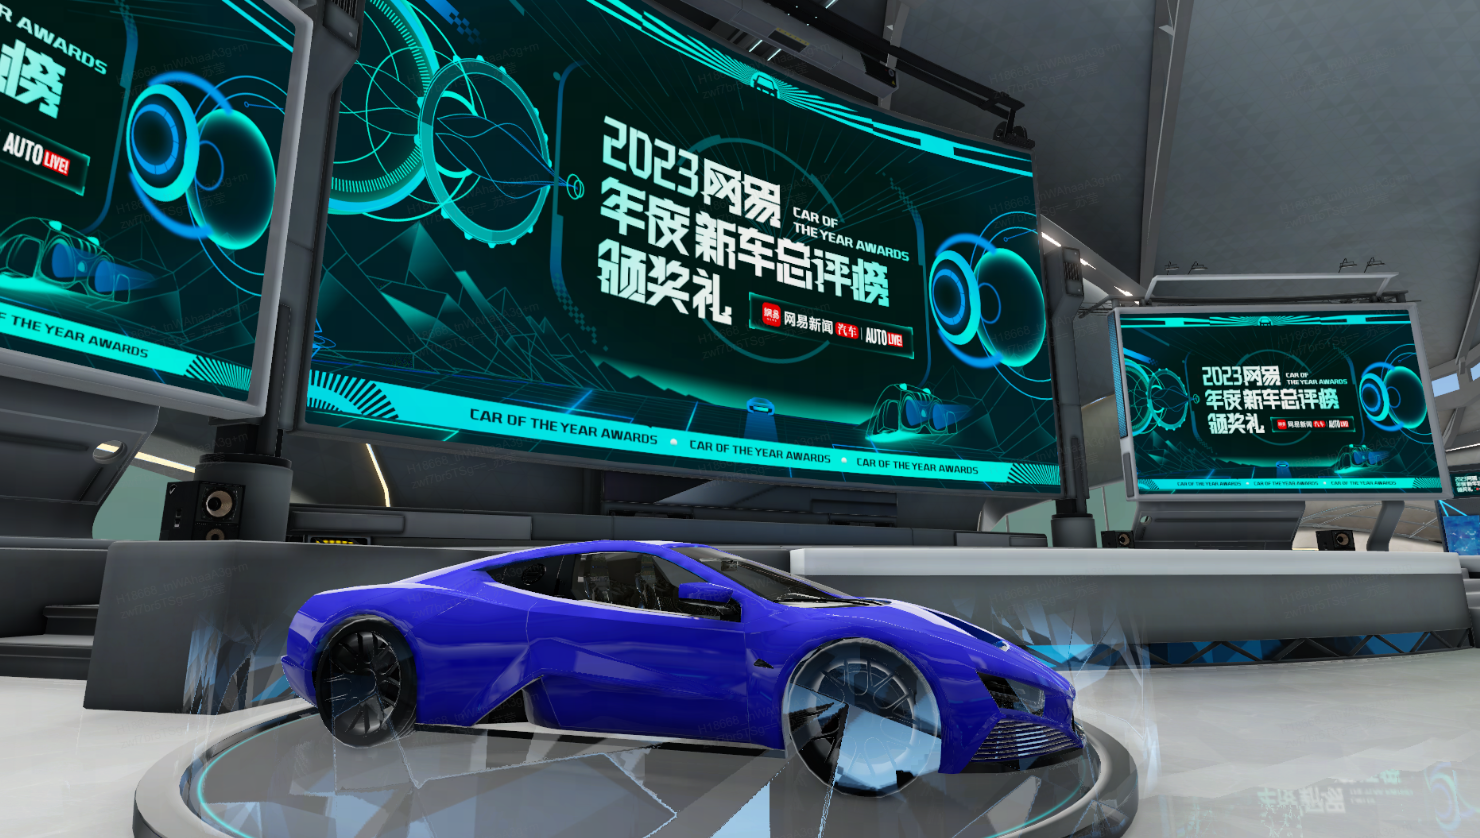 图片展示了一辆蓝色的概念跑车，置于展示台上，周围有多个显示屏展示着未来感的信息图表。